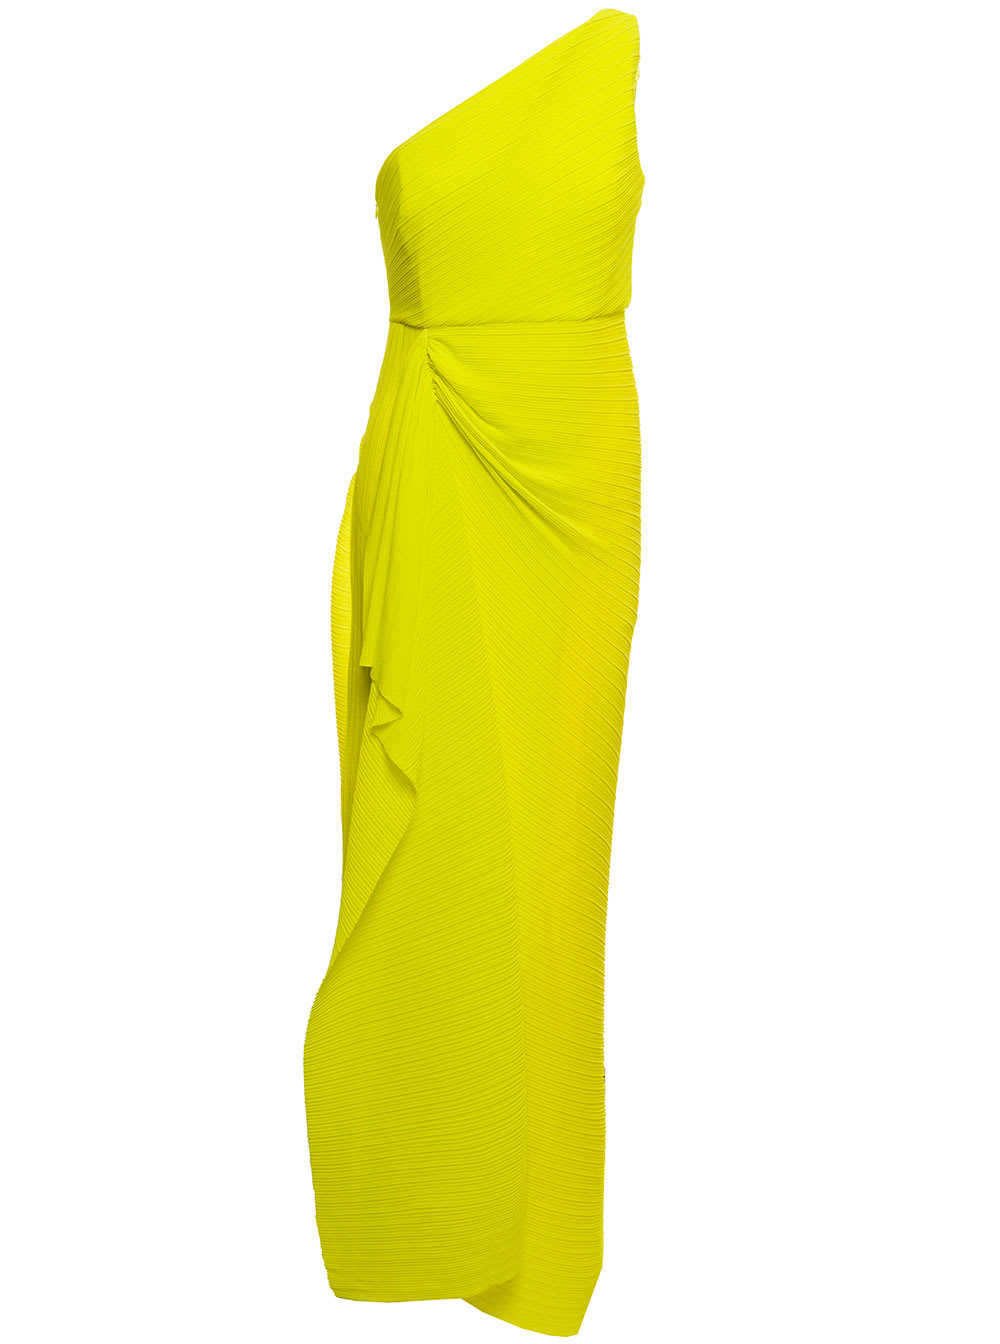 Solace London dyas Solace Woman Yellow Pleated Chiffon Dress